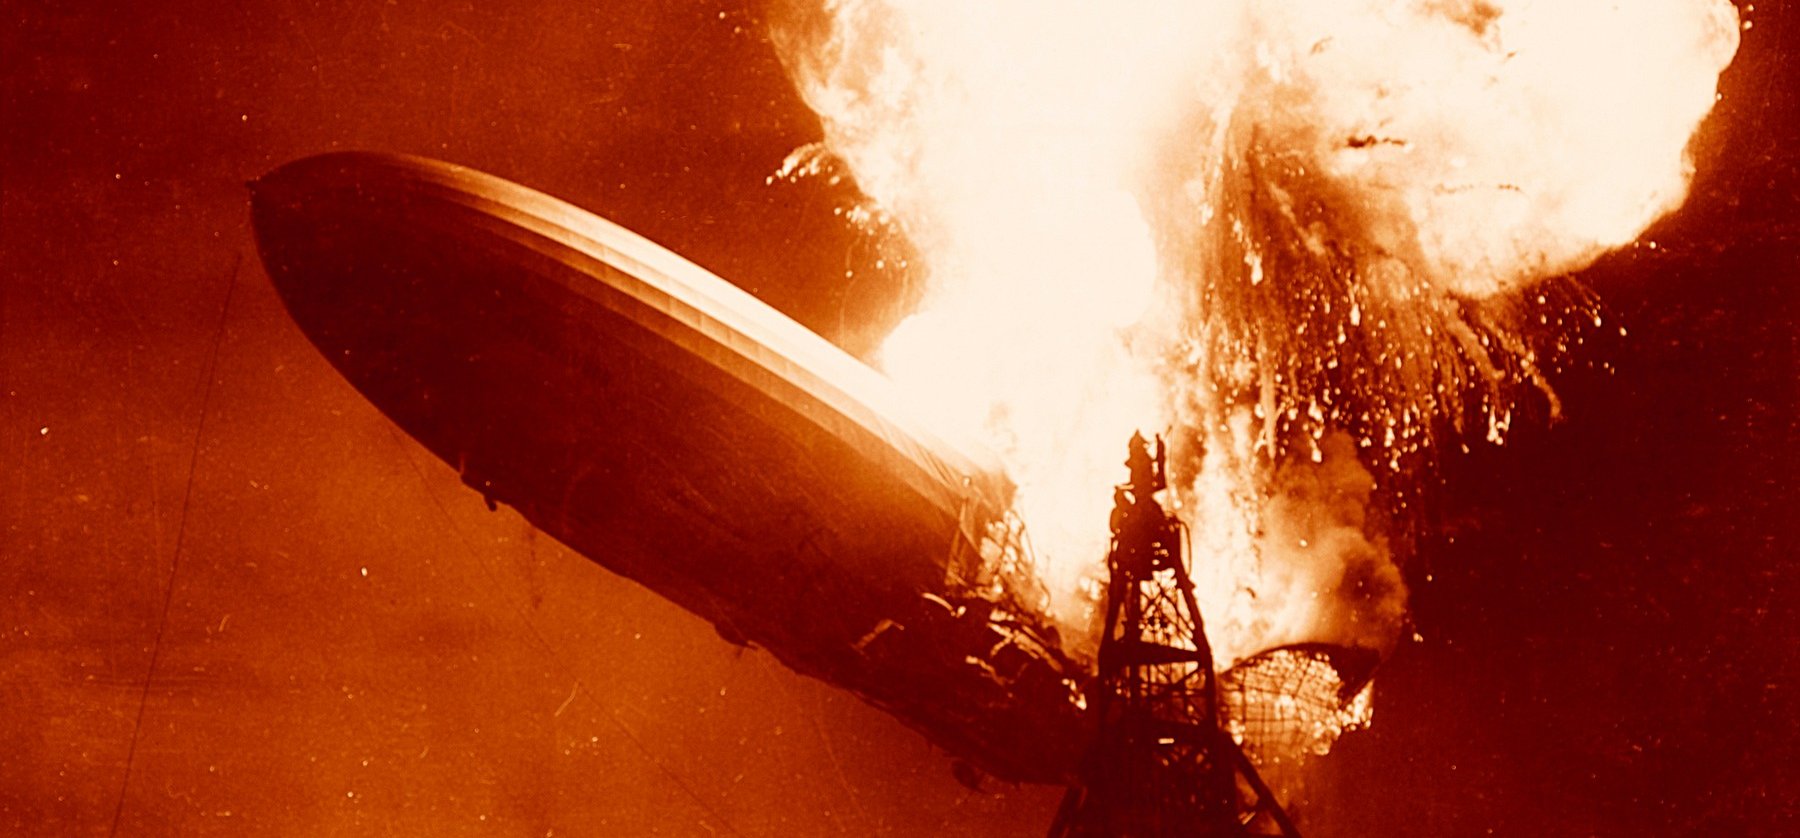 84 éve robbant fel a Hindenburg léghajó - korabeli fotók